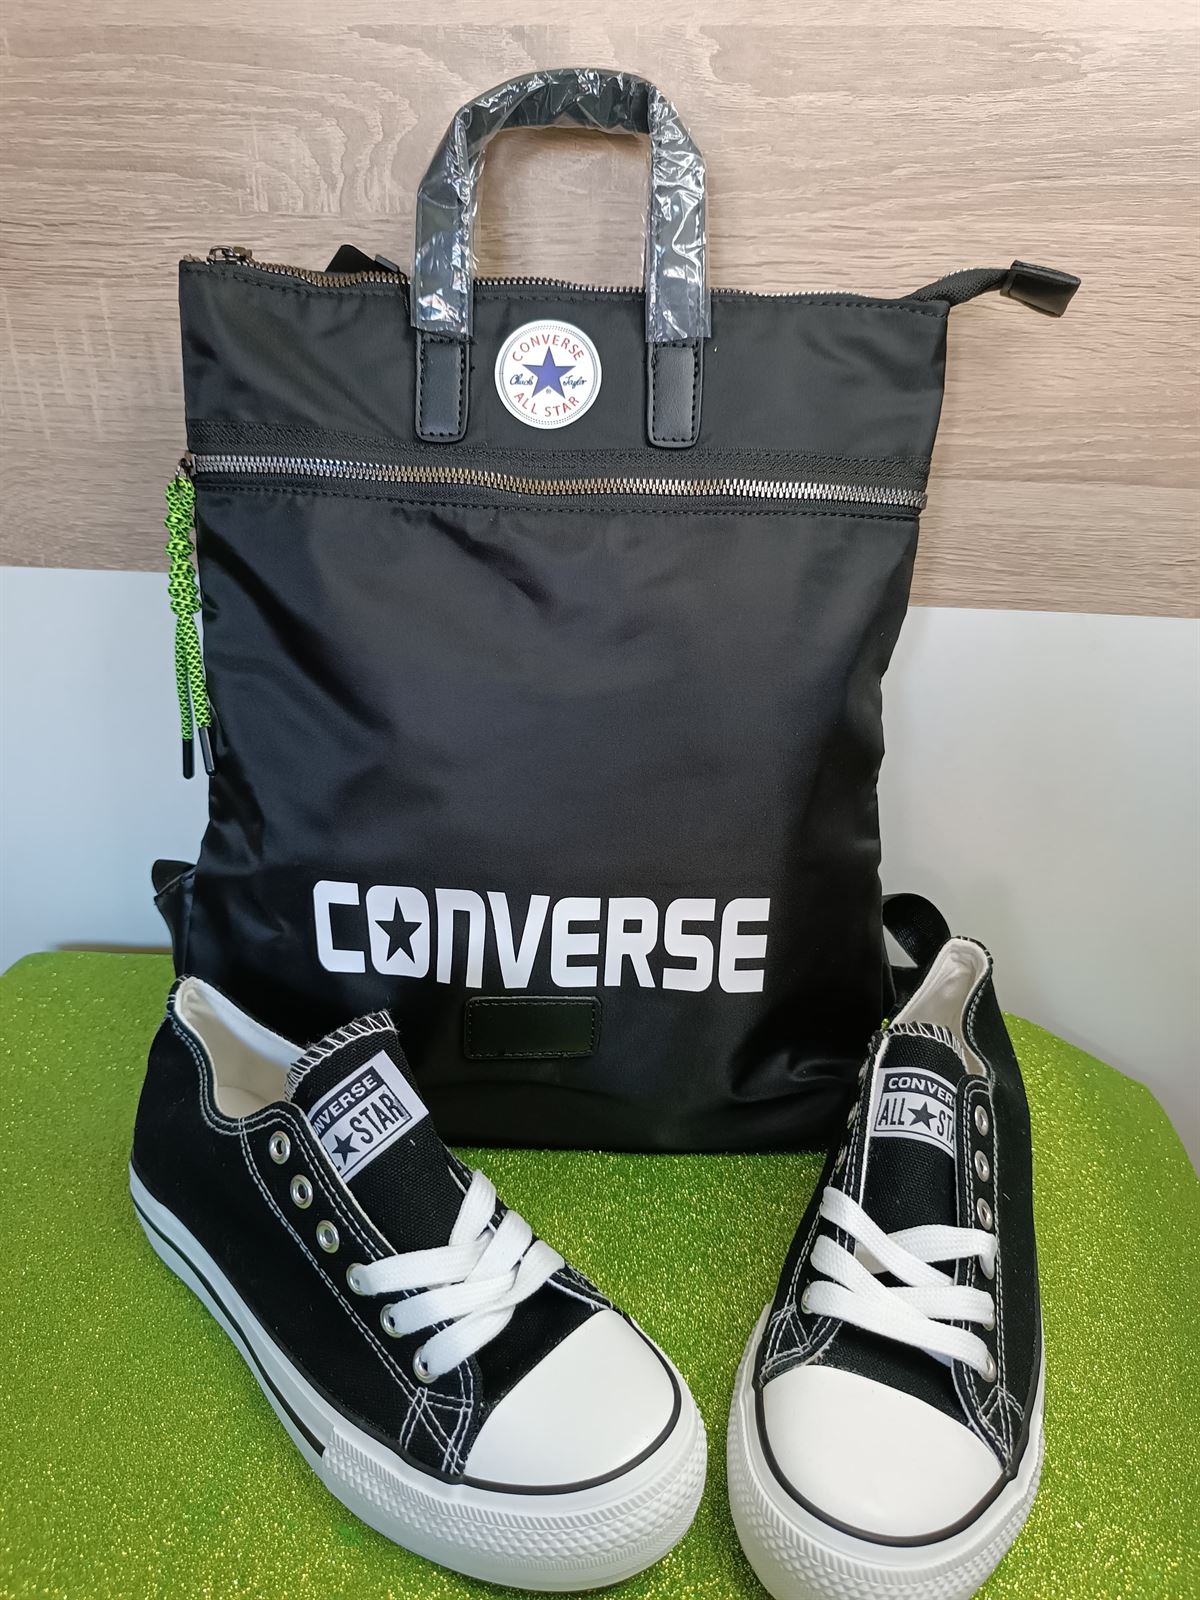 Conjunto de mochila y converse - Imagen 1